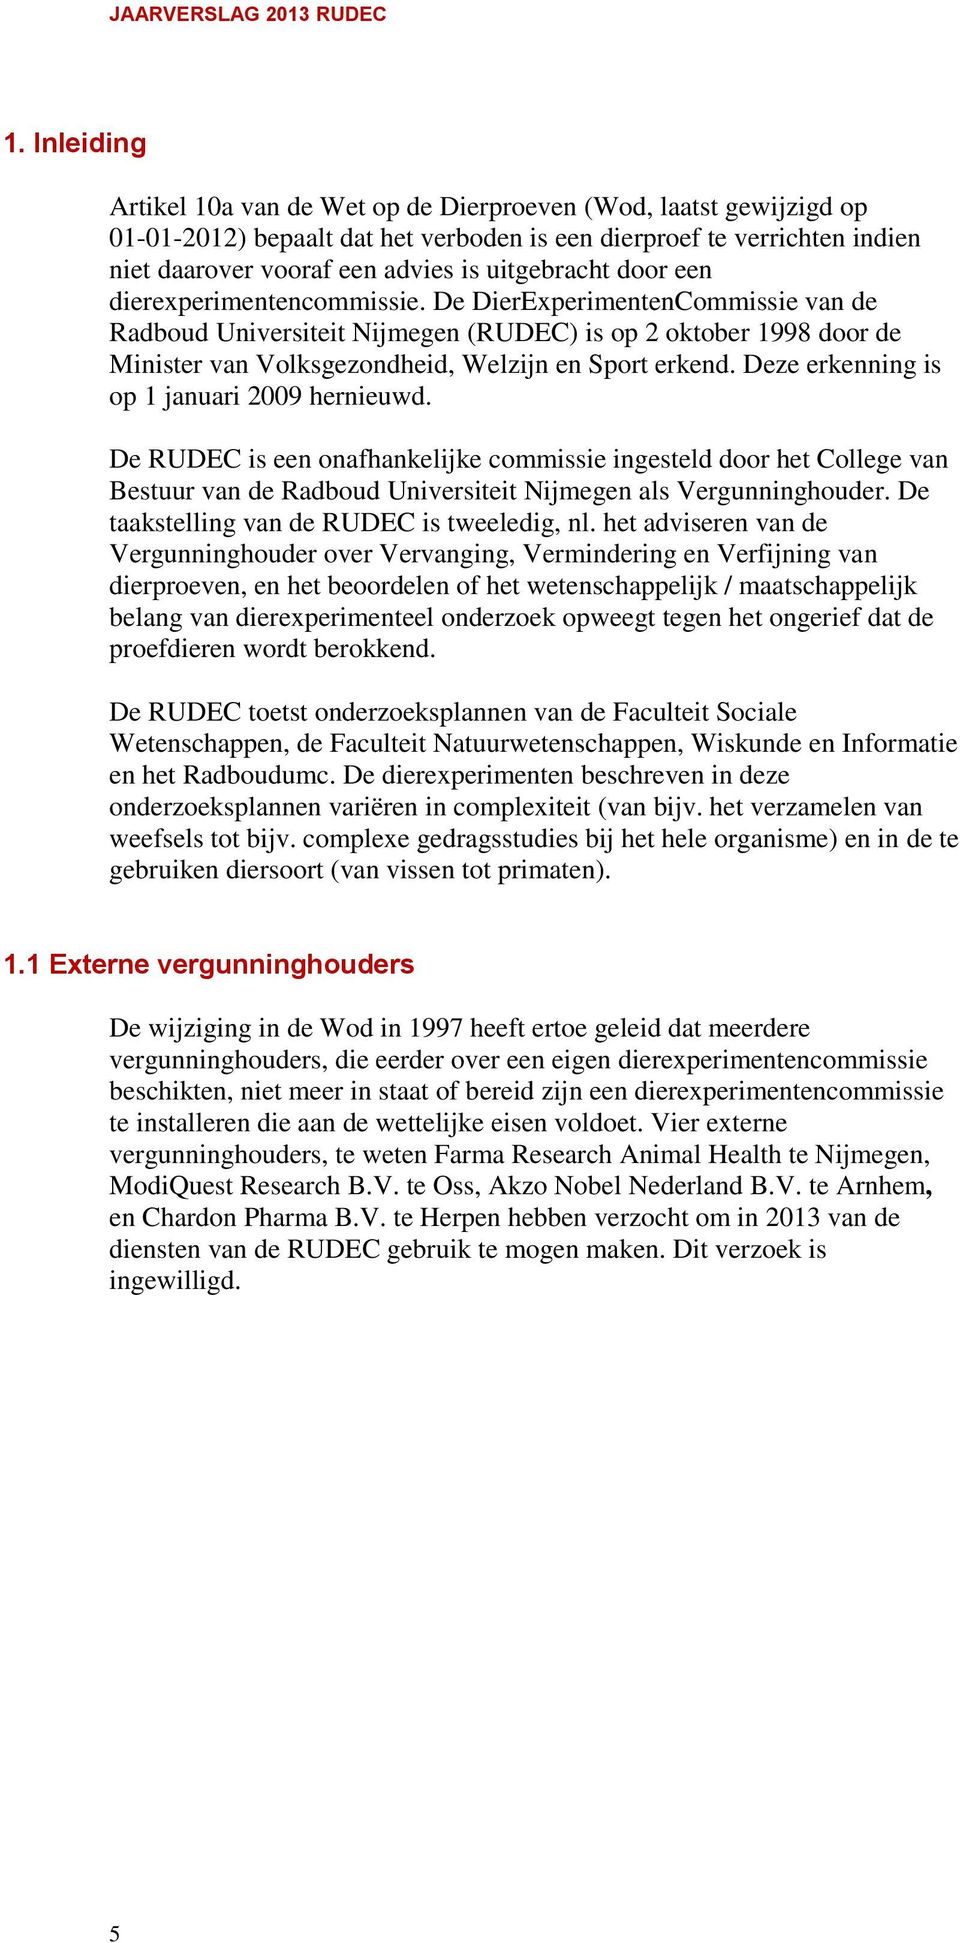 De DierExperimentenCommissie van de Radboud Universiteit Nijmegen (RUDEC) is op 2 oktober 1998 door de Minister van Volksgezondheid, Welzijn en Sport erkend.